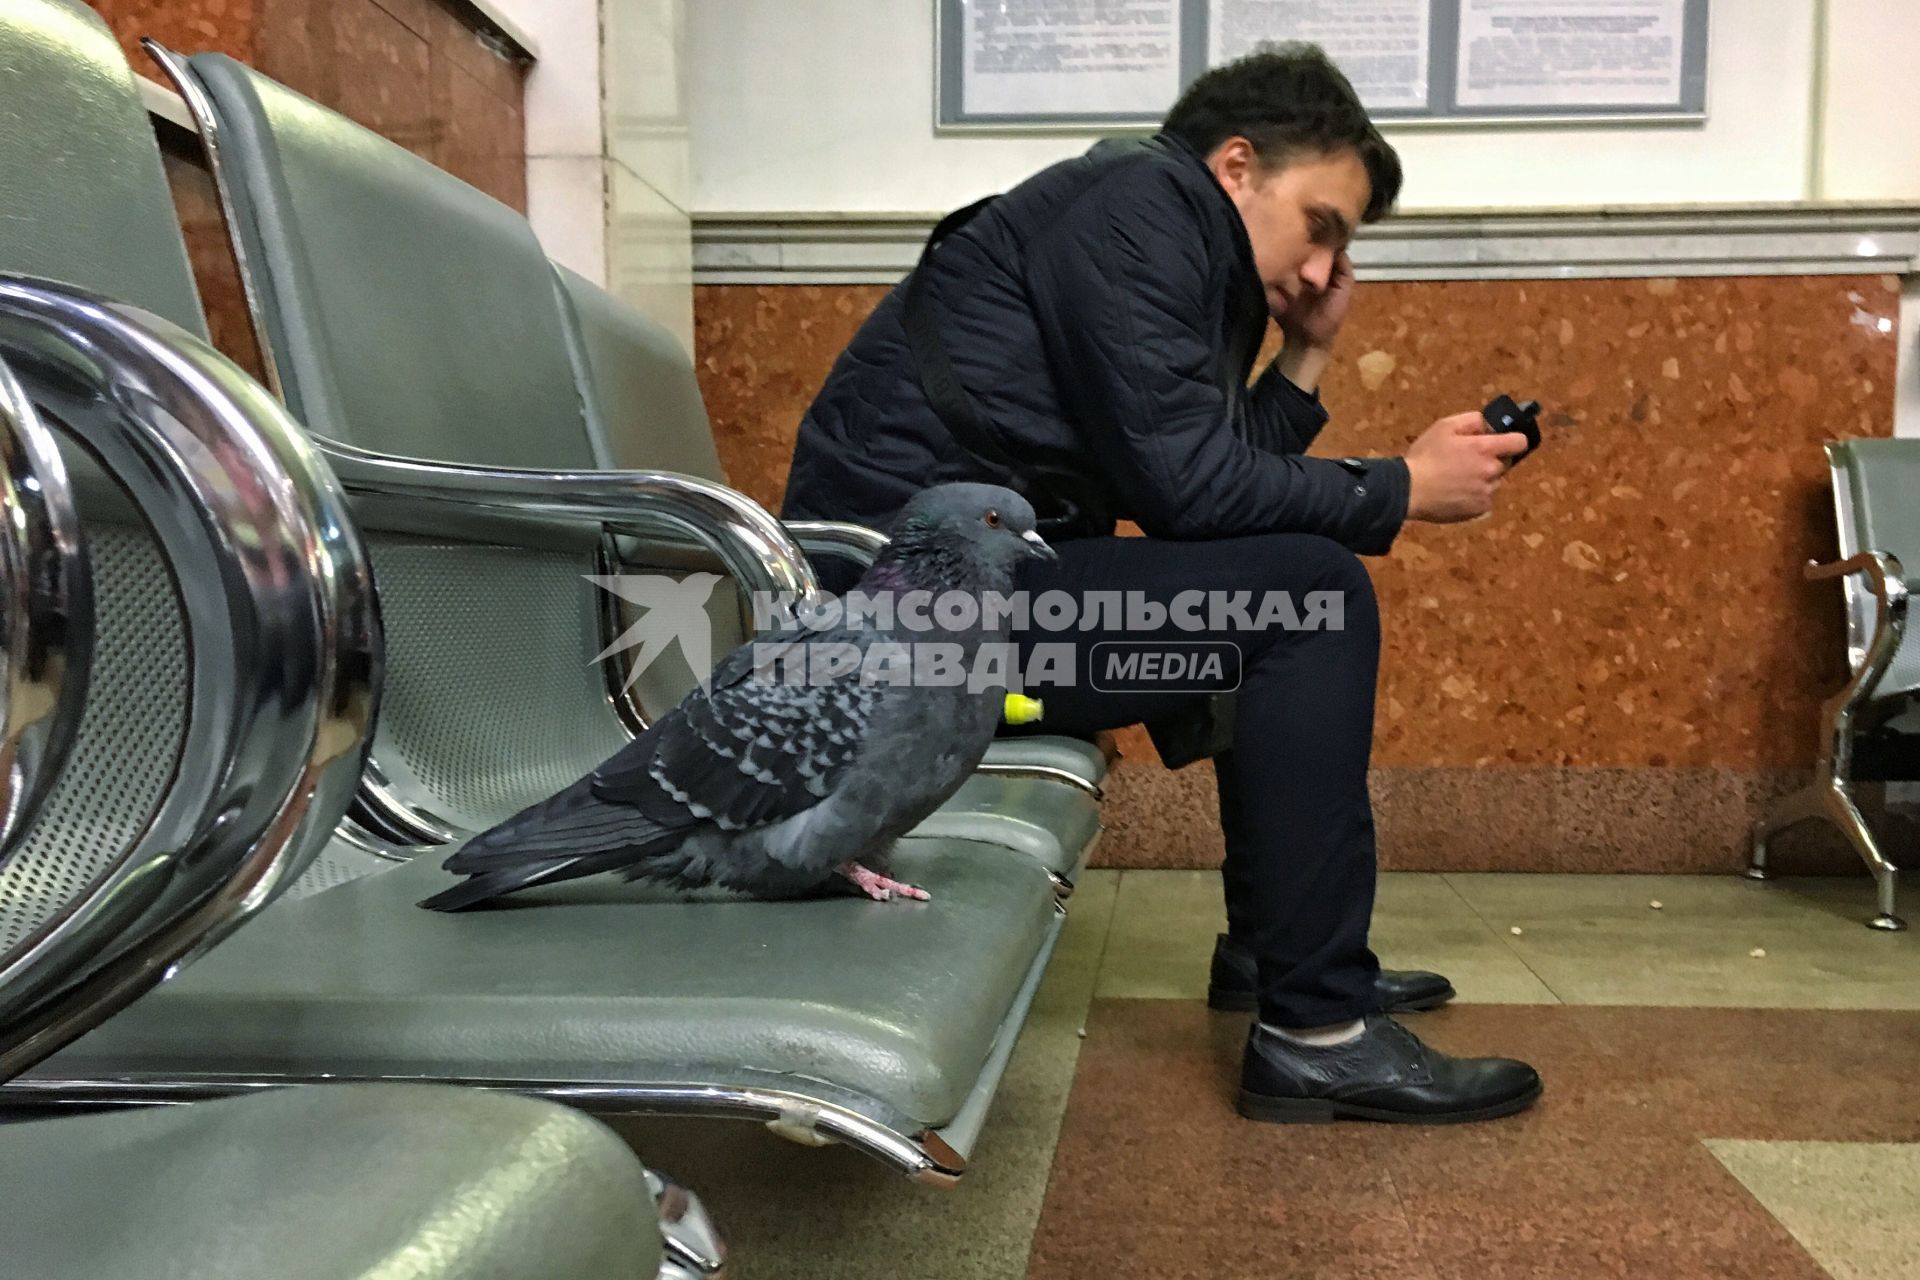 Ярославль.  Юноша  в зале ожидания на вокзале.